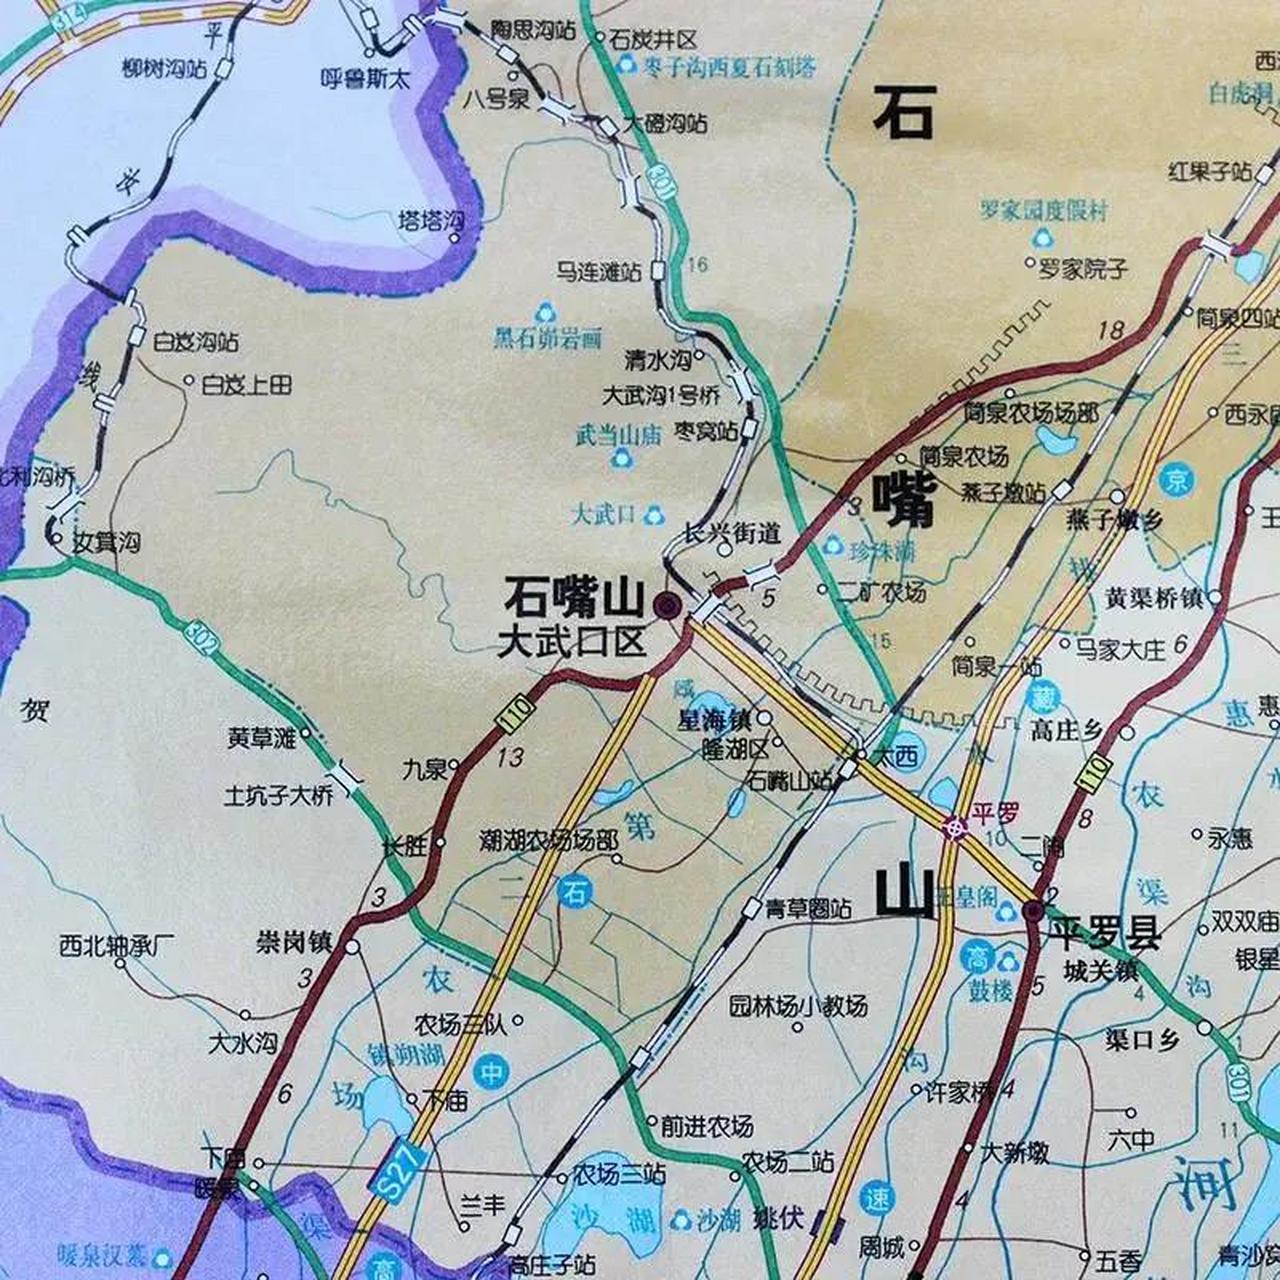 石嘴山市位于宁夏最北端,全市包括两区一县,总面积5310平方千米,常住